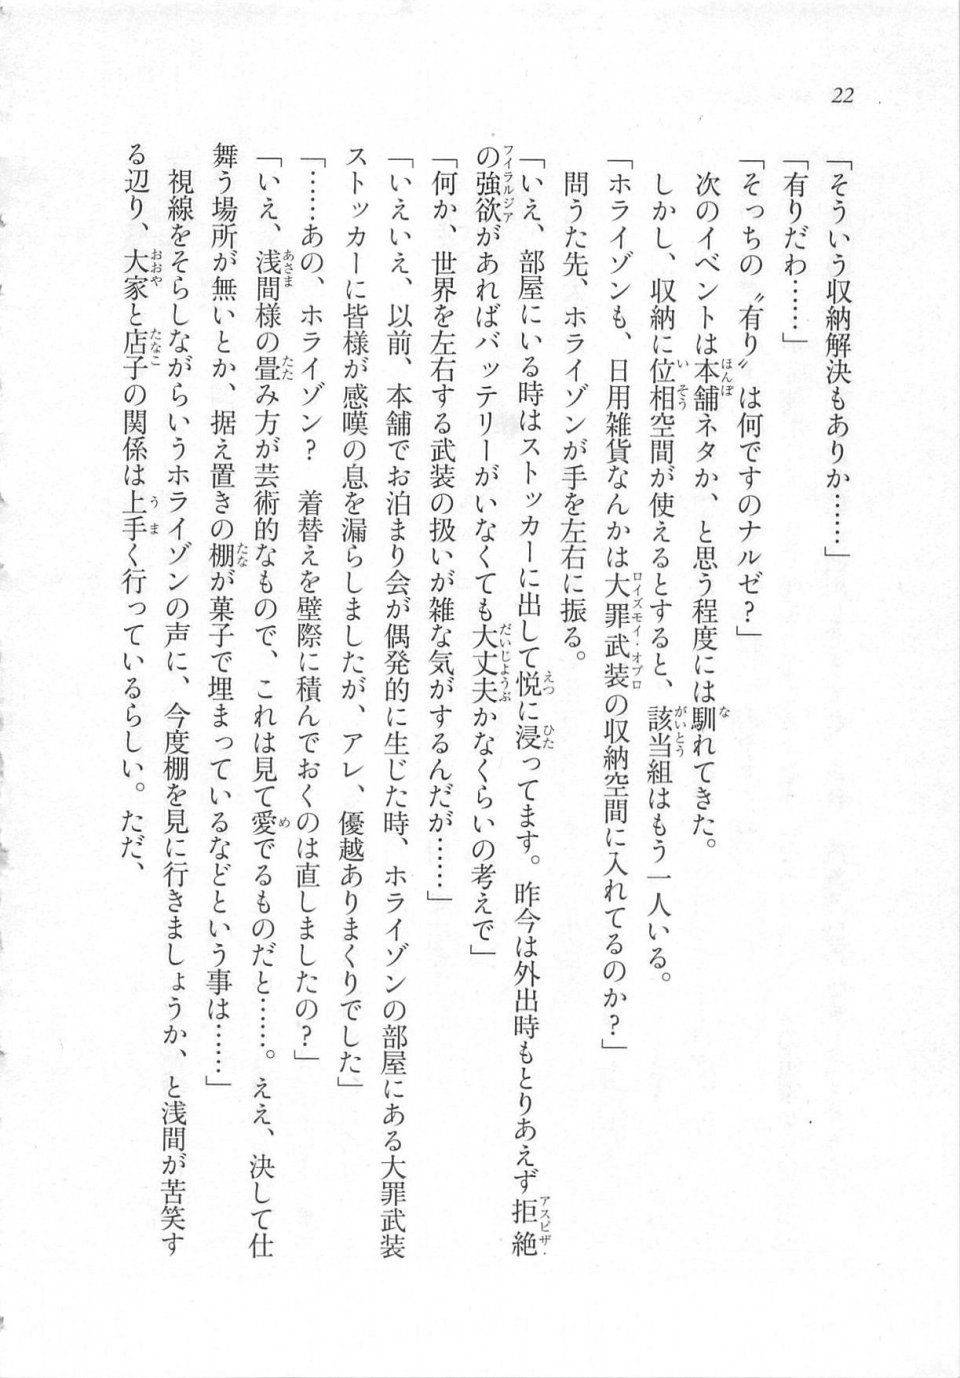 Kyoukai Senjou no Horizon LN Sidestory Vol 3 - Photo #26